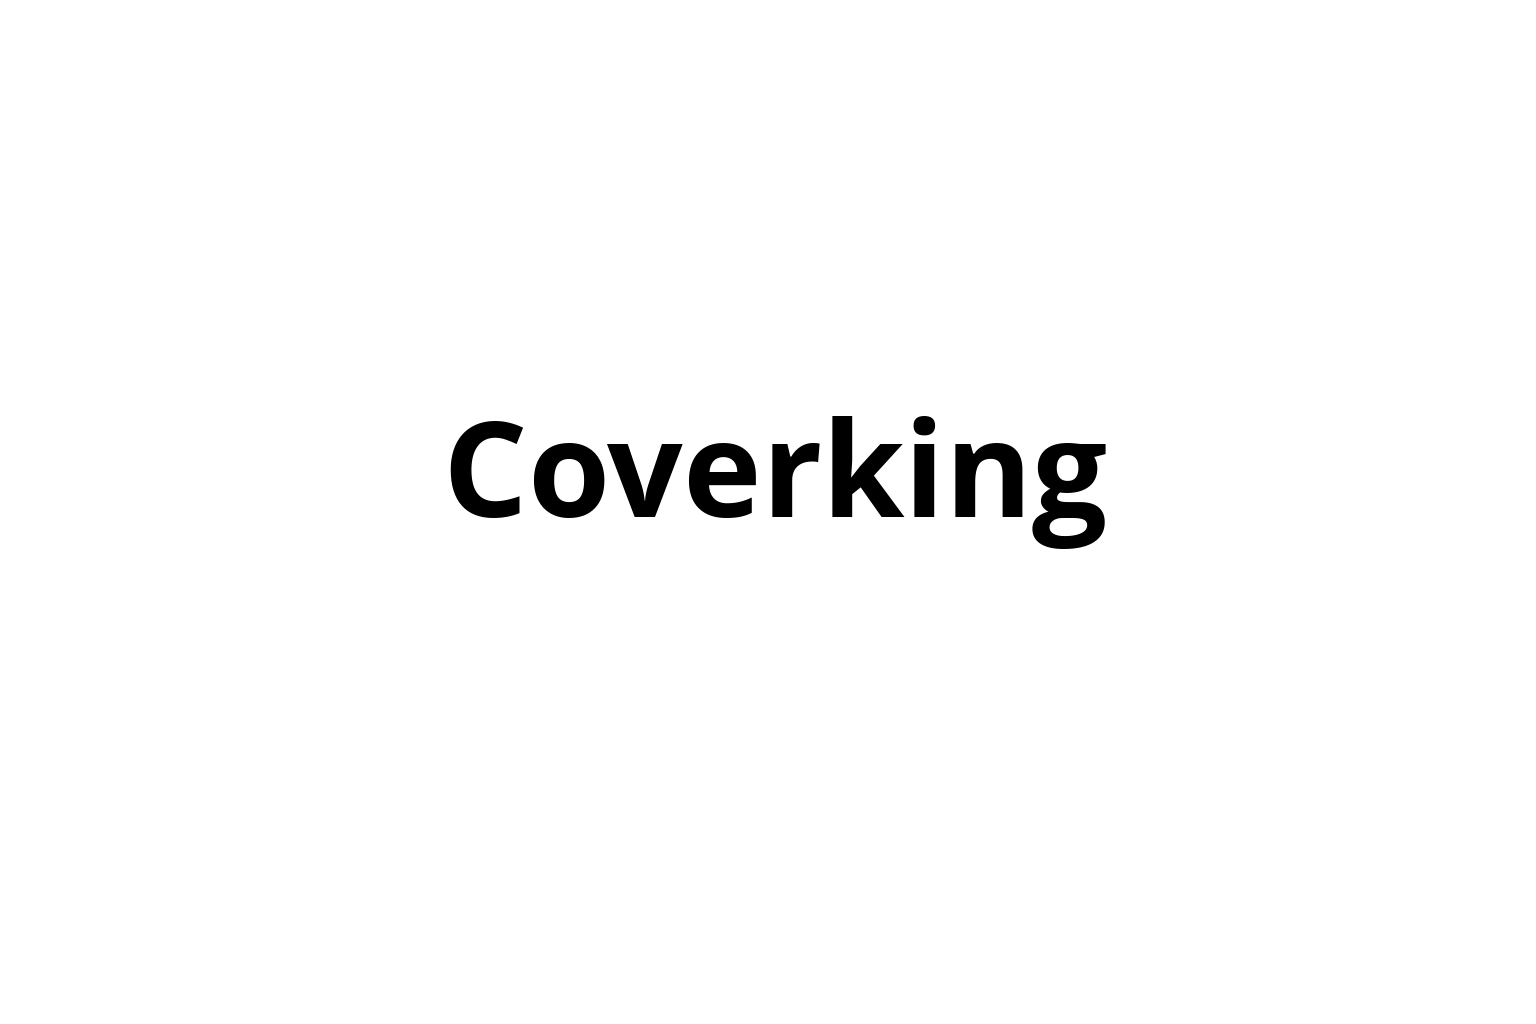 Coverking